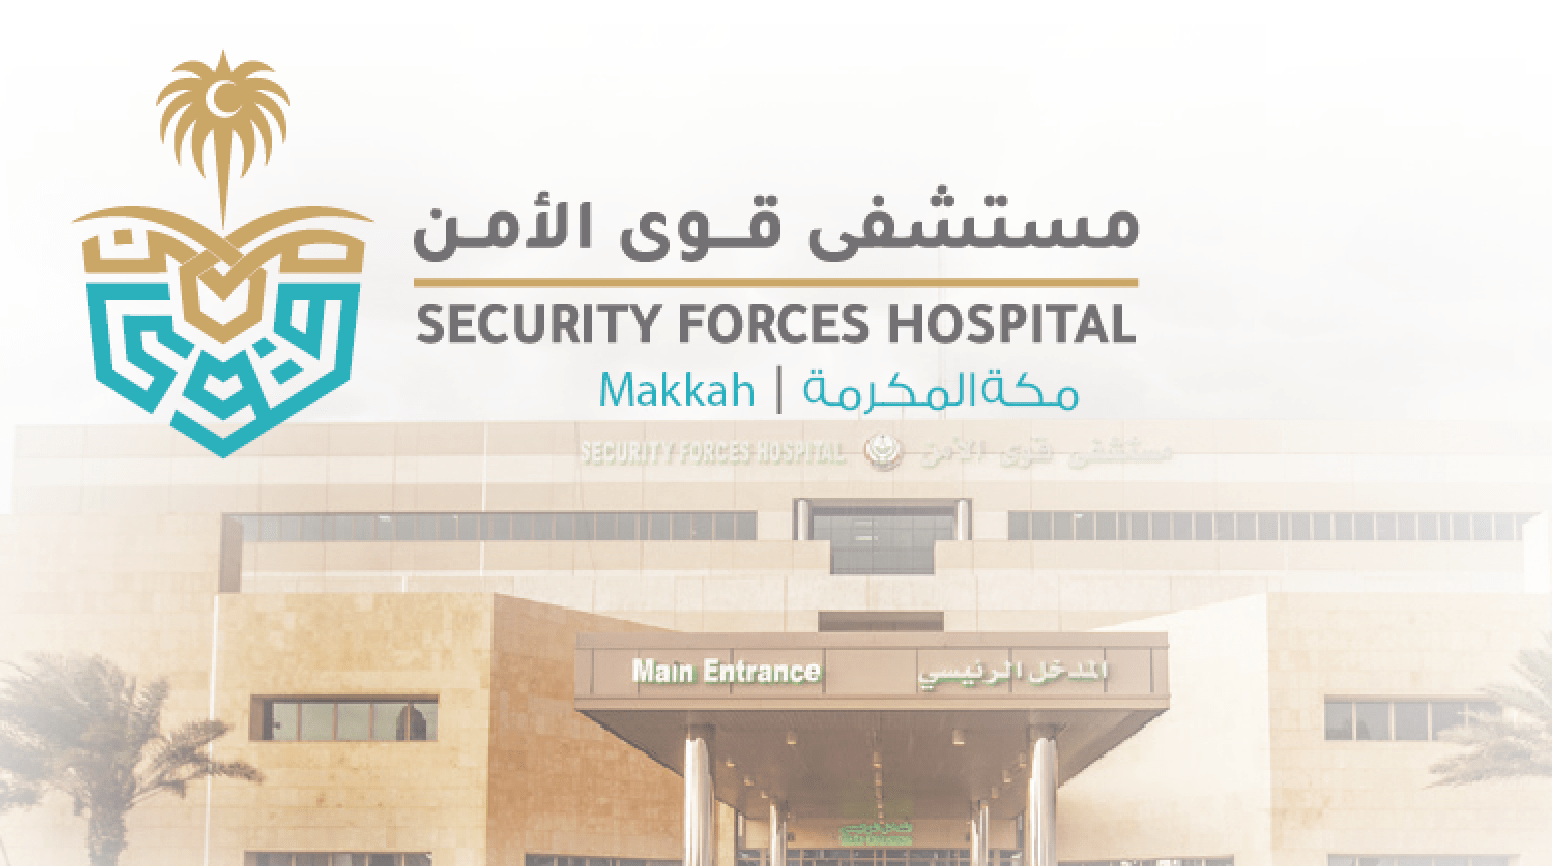 مستشفى قوى الأمن بمكة المكرمة توفر وظائف طبية وإدارية للجنسين بعدة تخصصات